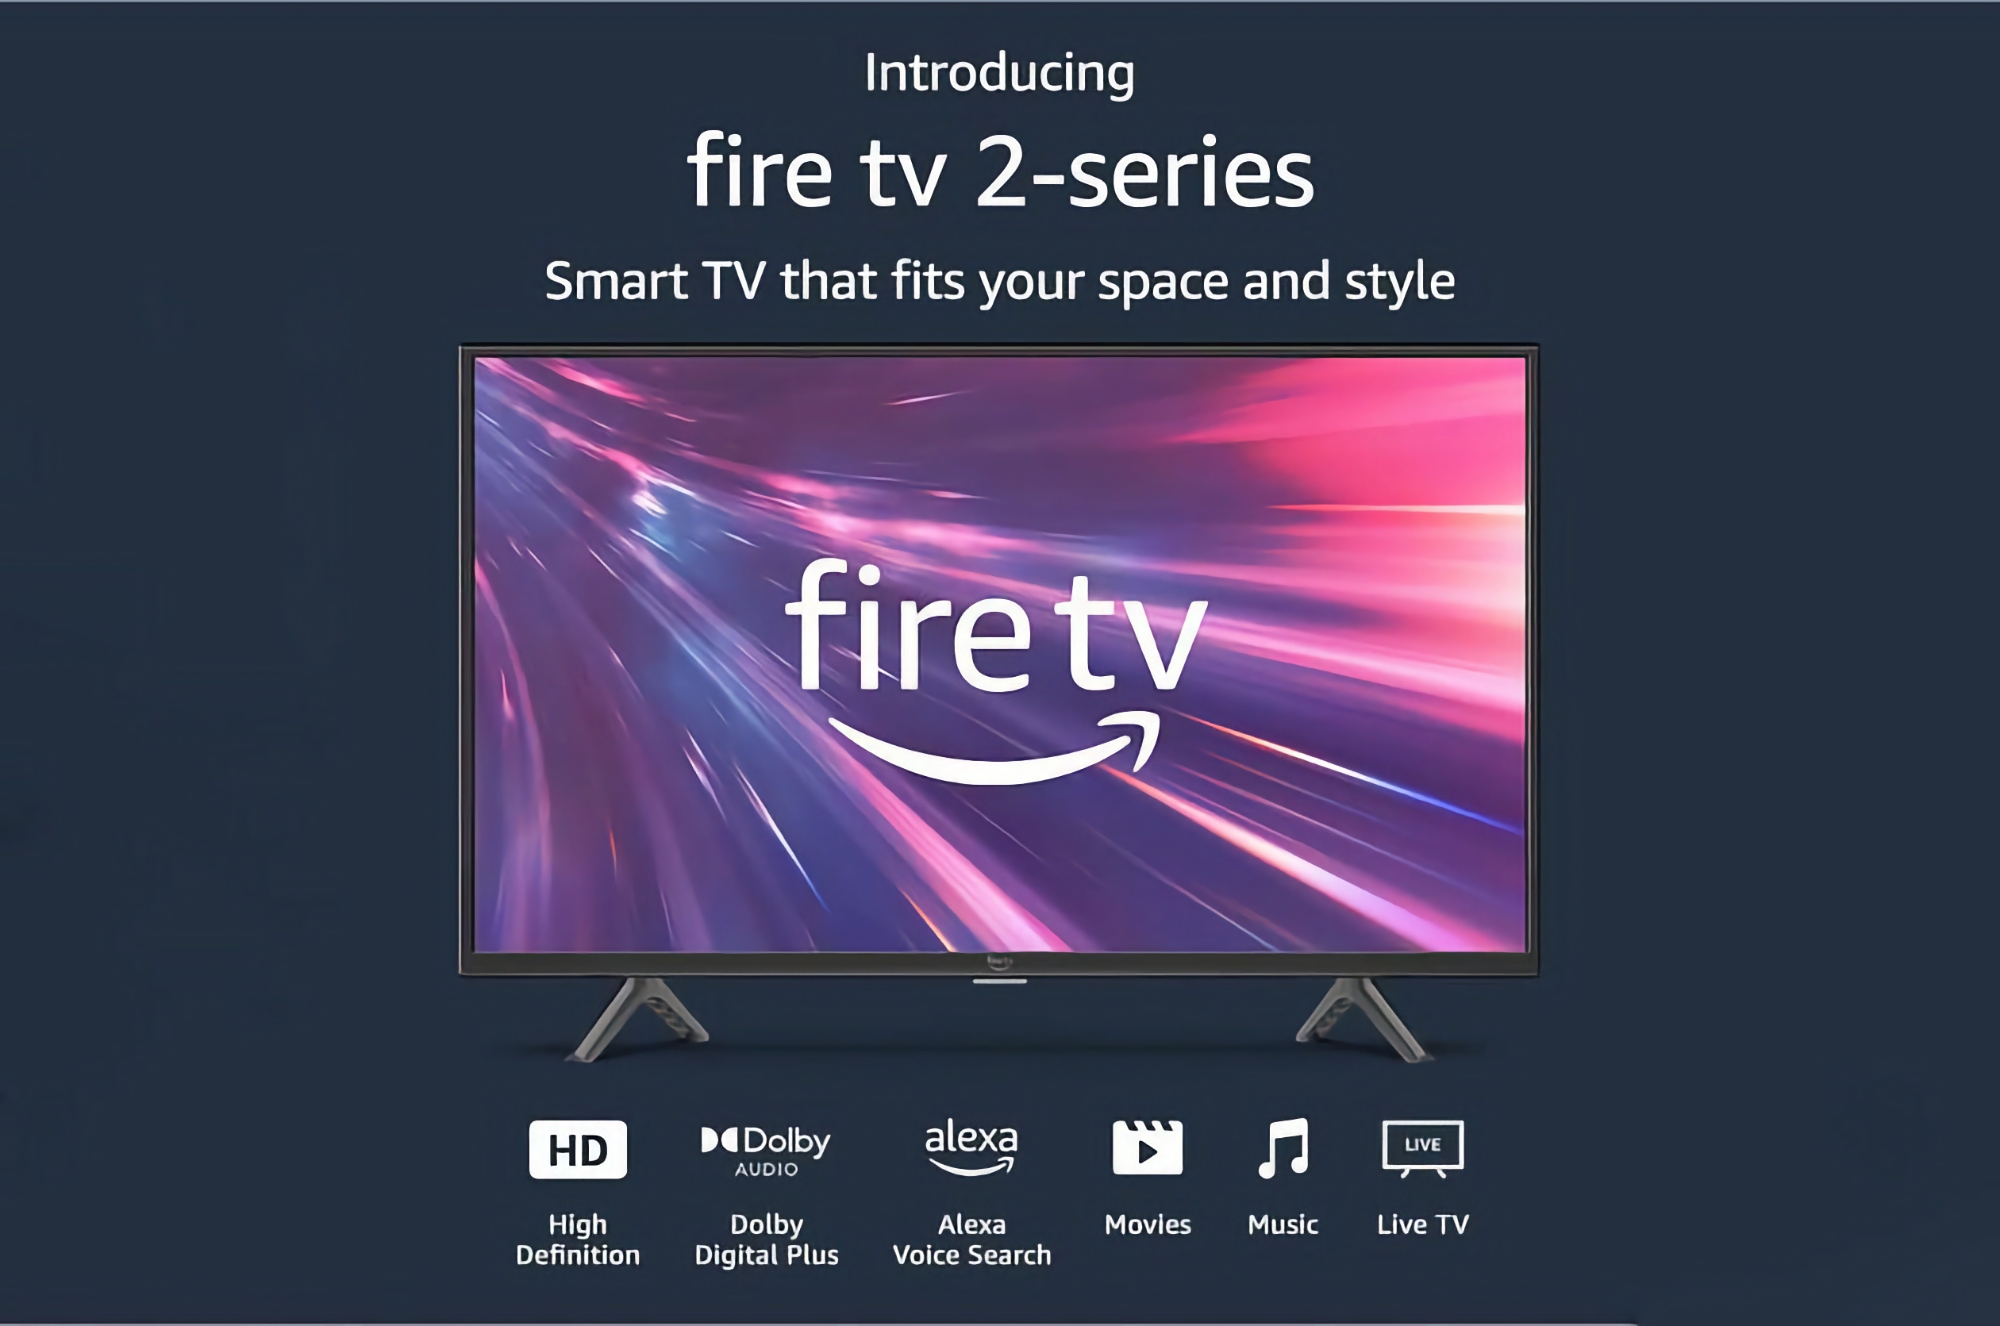 Amazon Fire TV 2 con pantalla de 32 pulgadas con un 40% de descuento